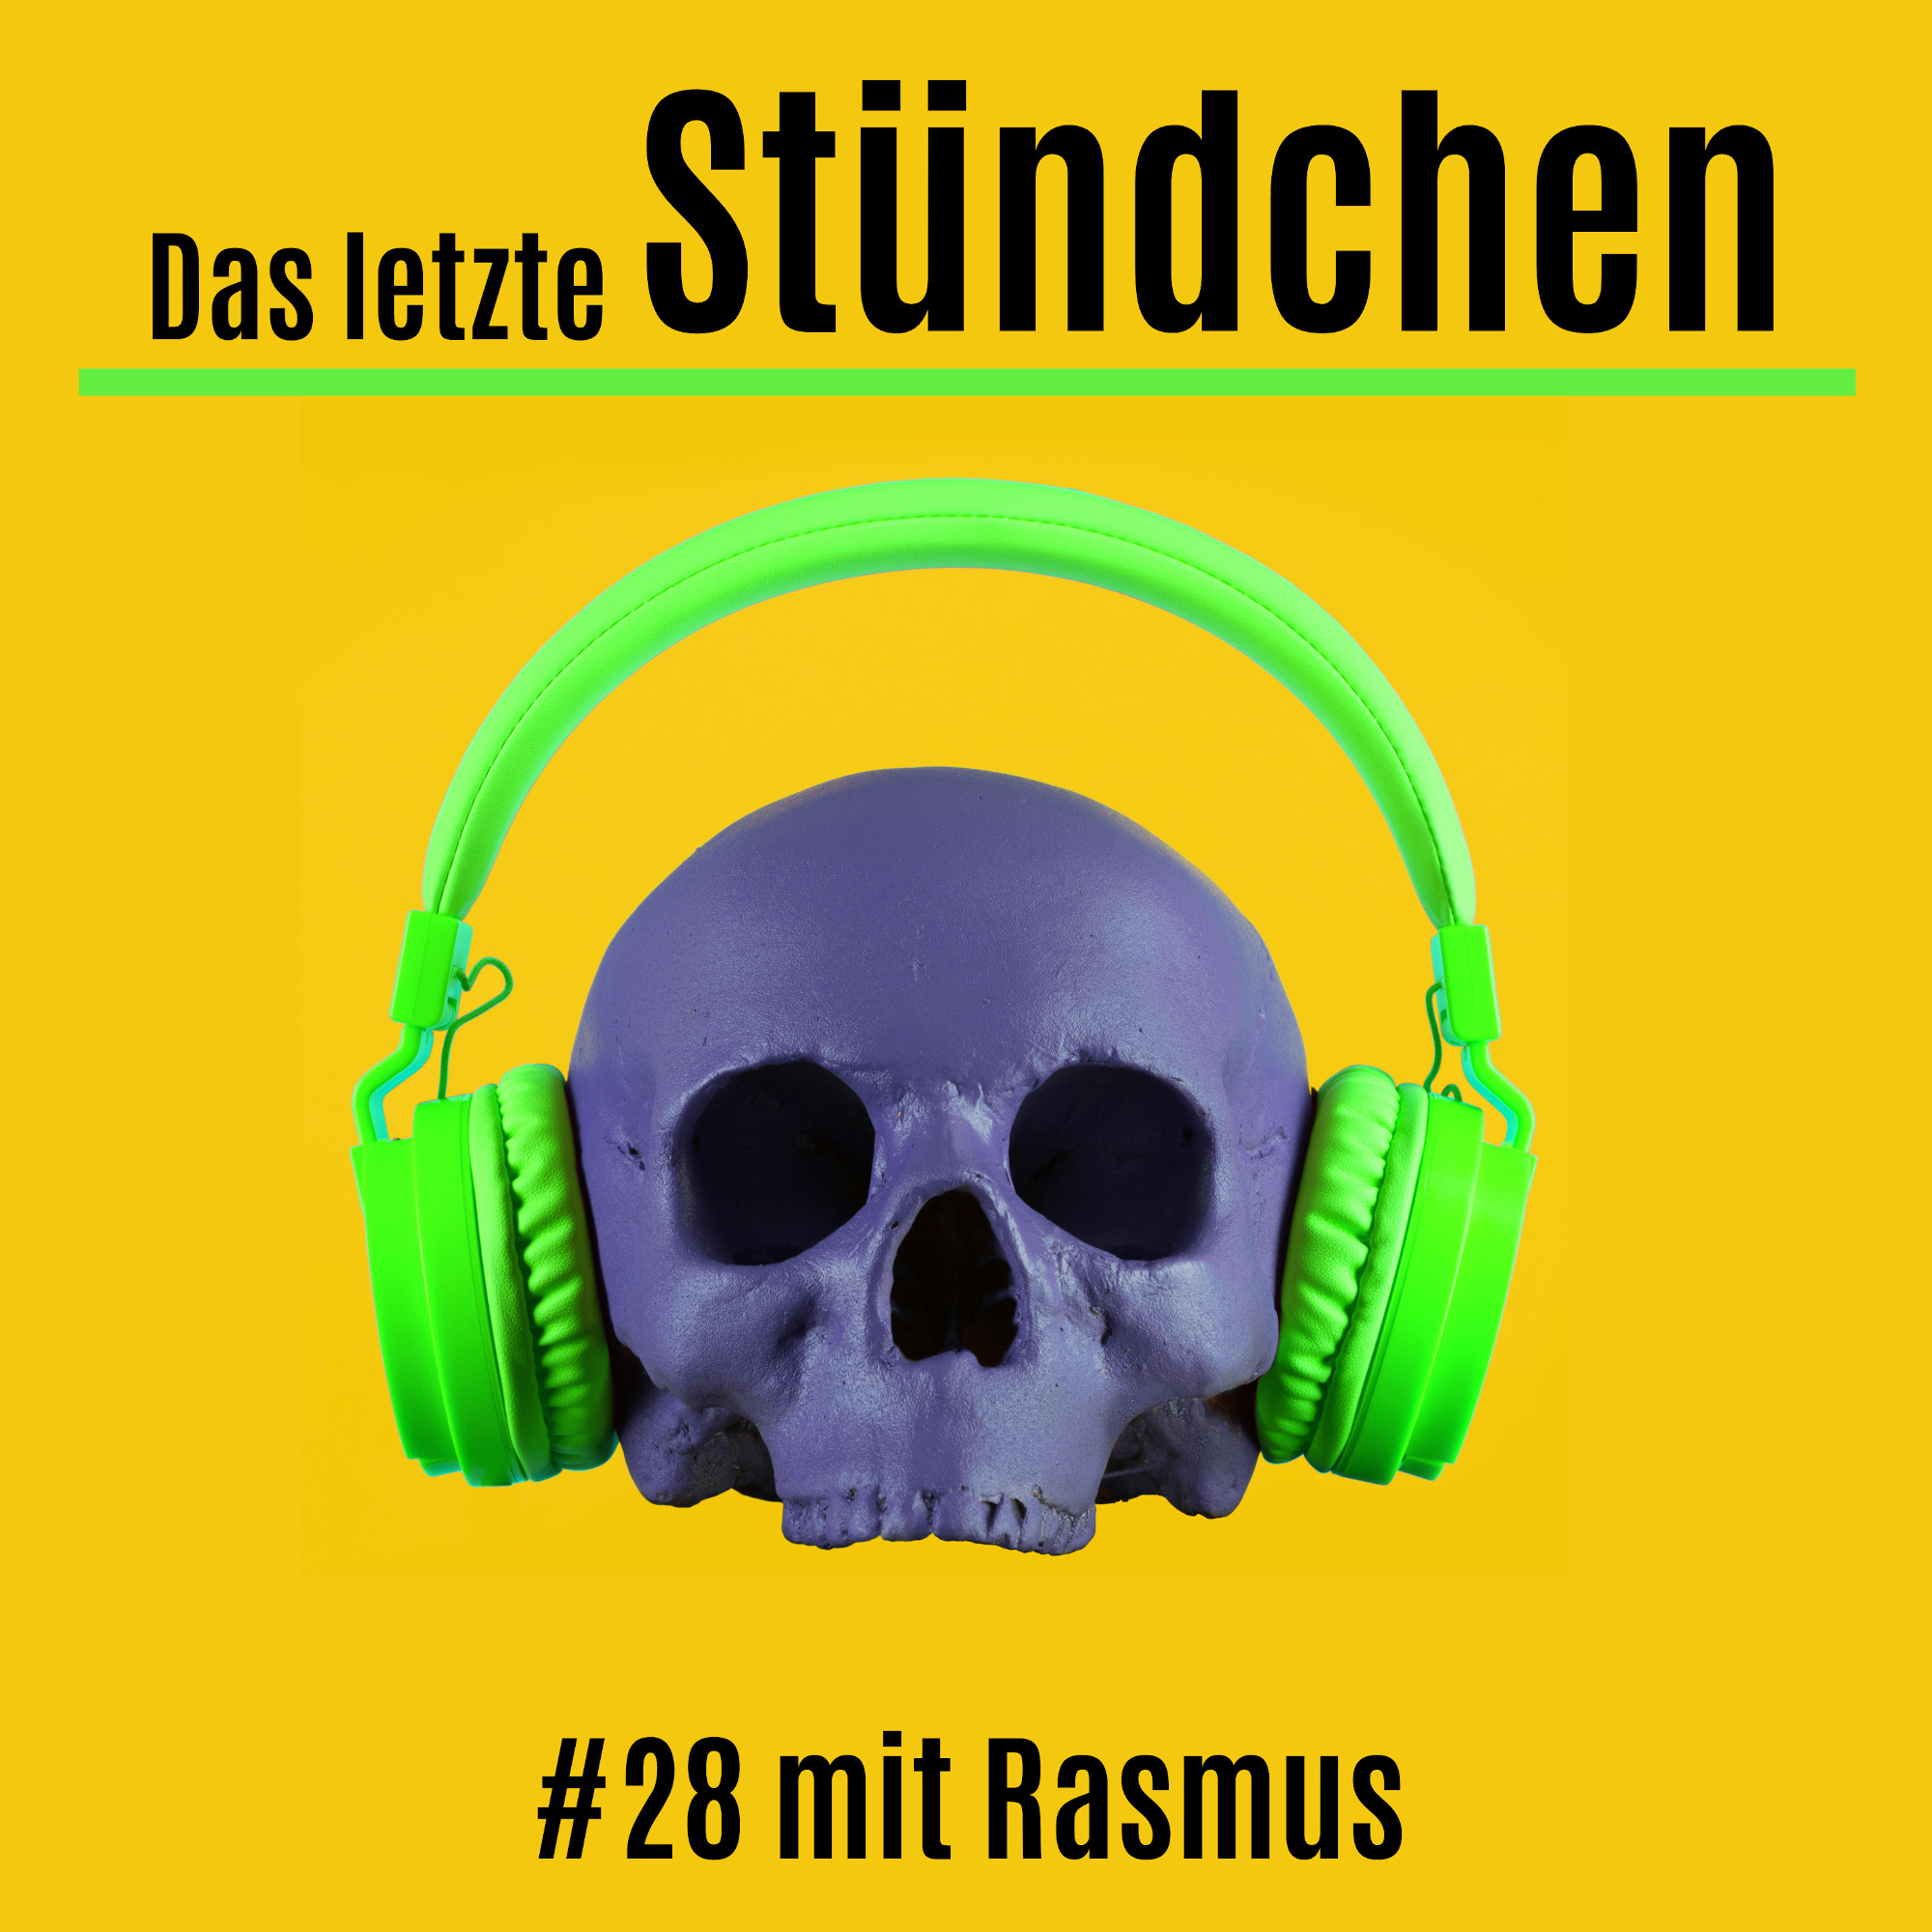 Das letzte Stündchen #28 über Suizid: Rasmus erzählt